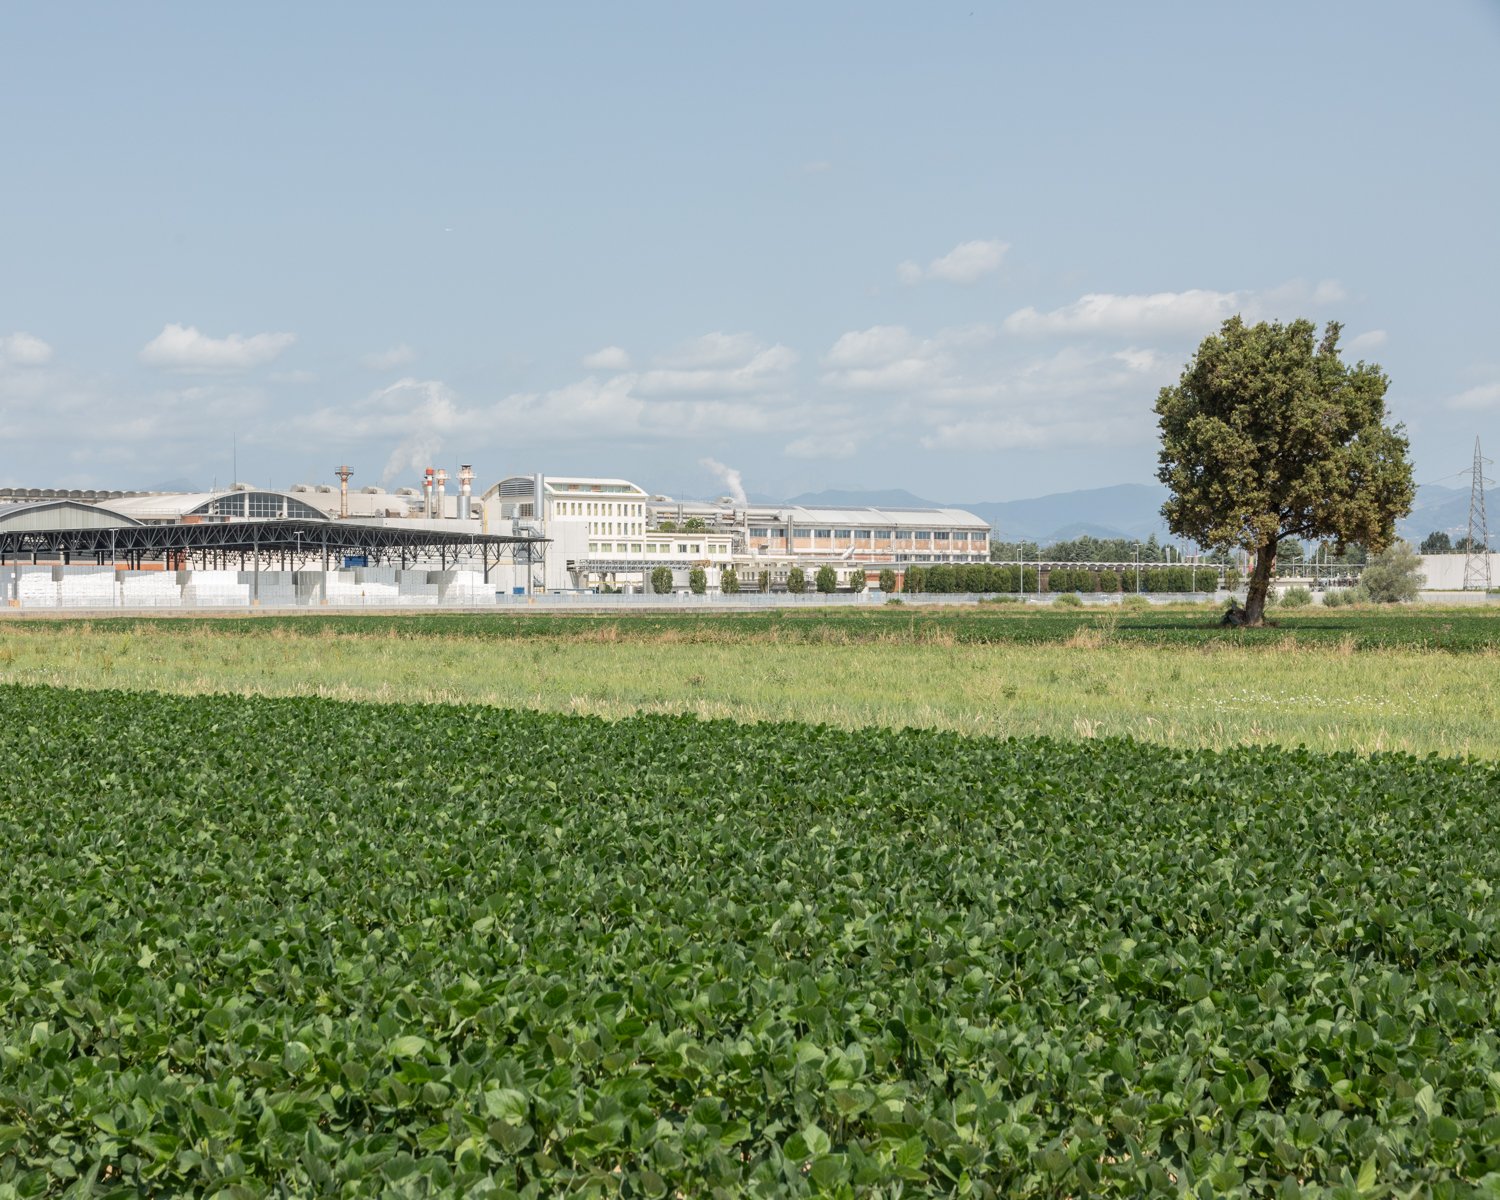  Uno degli stabilimenti dell’azienda Sofidel. Porcari, (Lucca), 2023.  